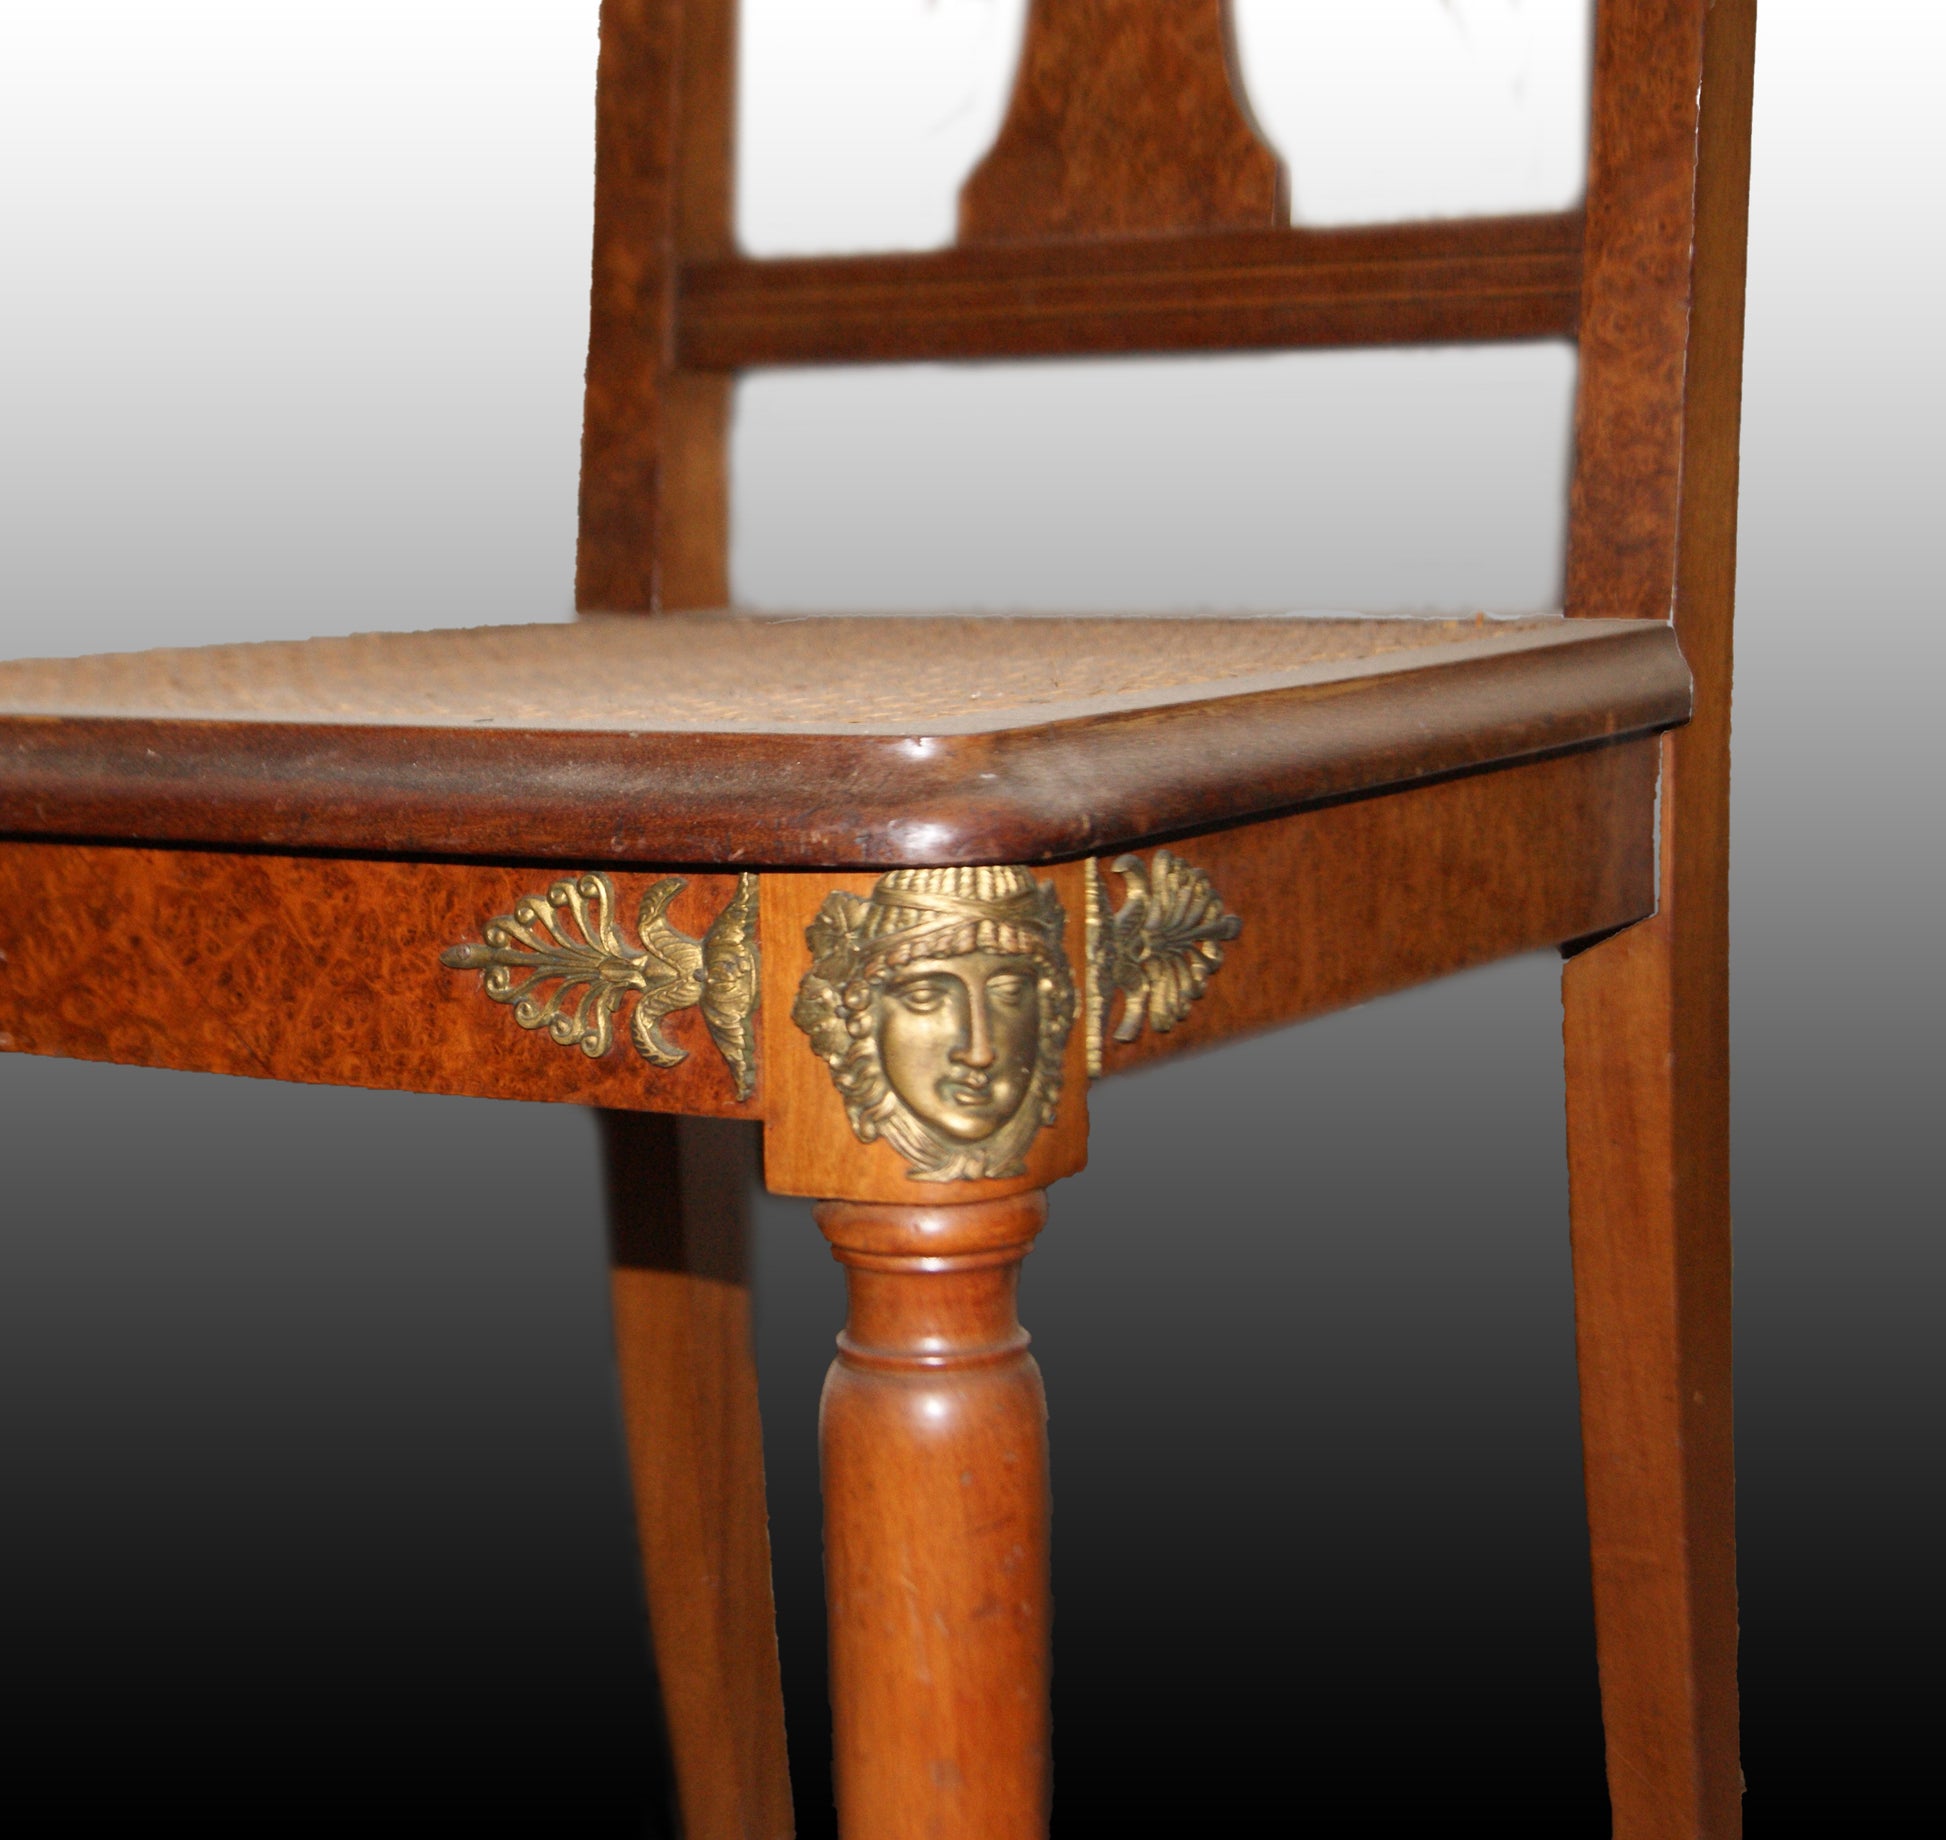 Gruppo si 6 sedie francesi stile Impero del 1800 con ricchi bronzi e radica